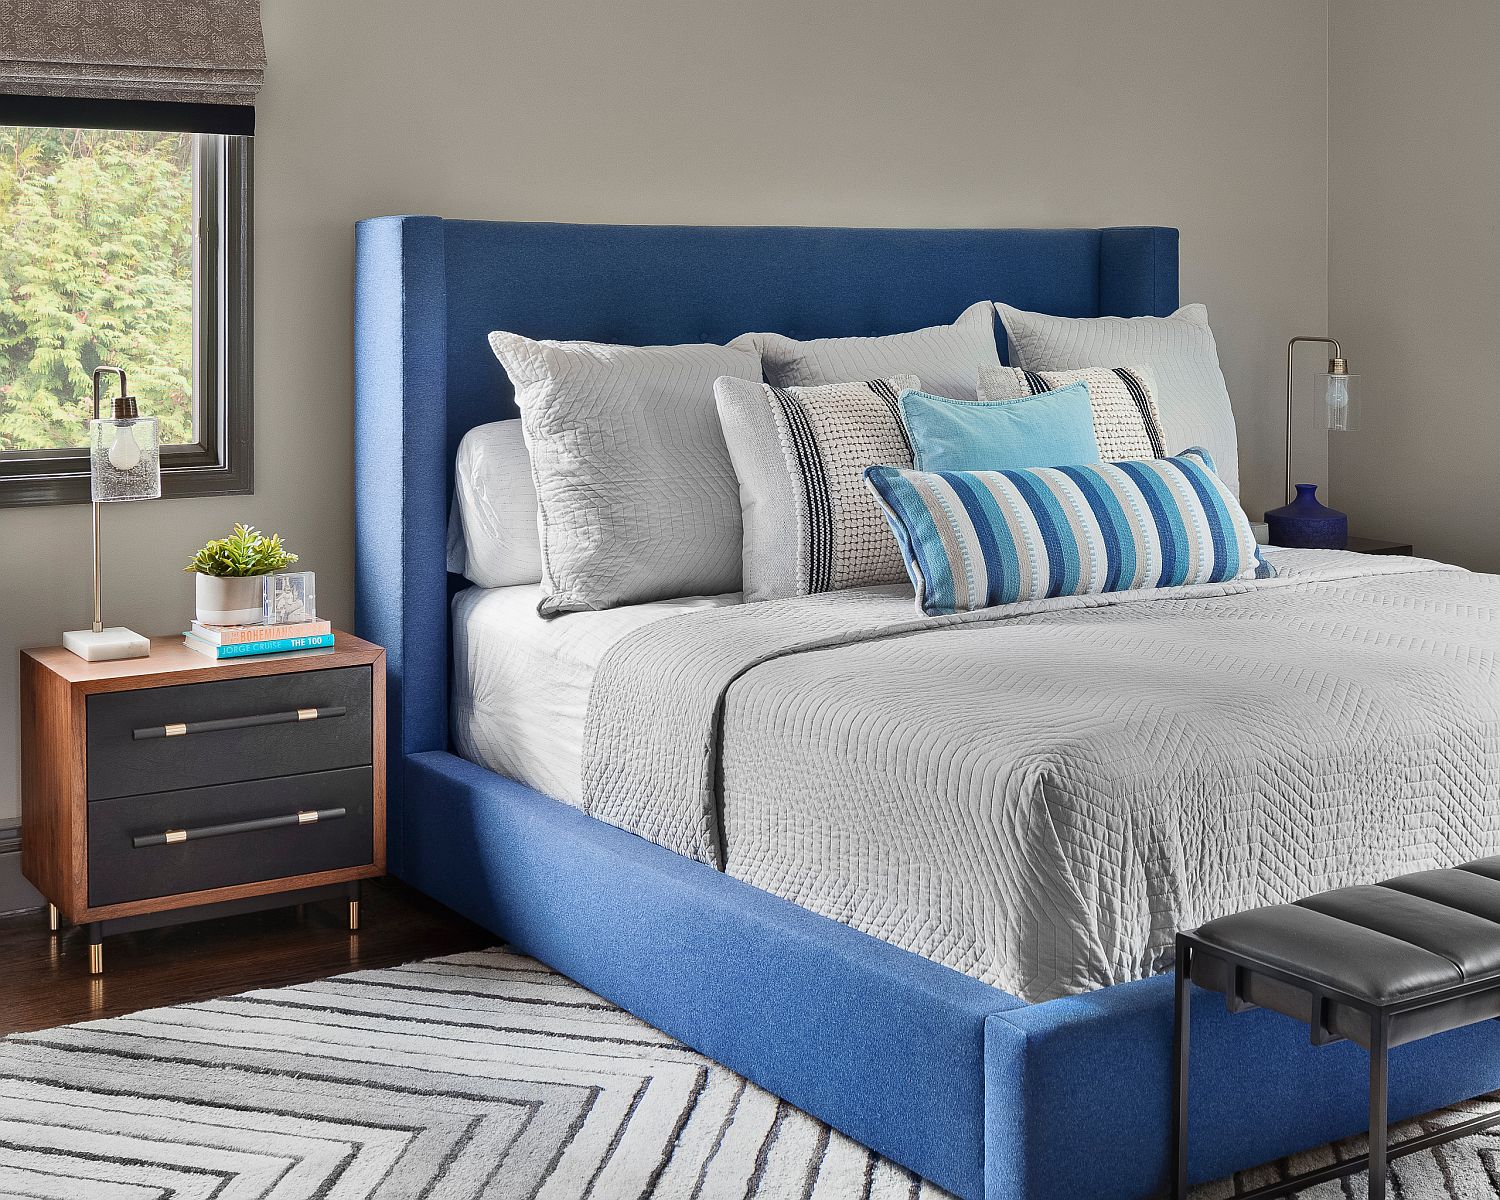 Hình ảnh phòng ngủ hiện đại với giường nệm màu xanh, tủ ngăn kéo đầu giường bằng gỗ, chân bọc đồng